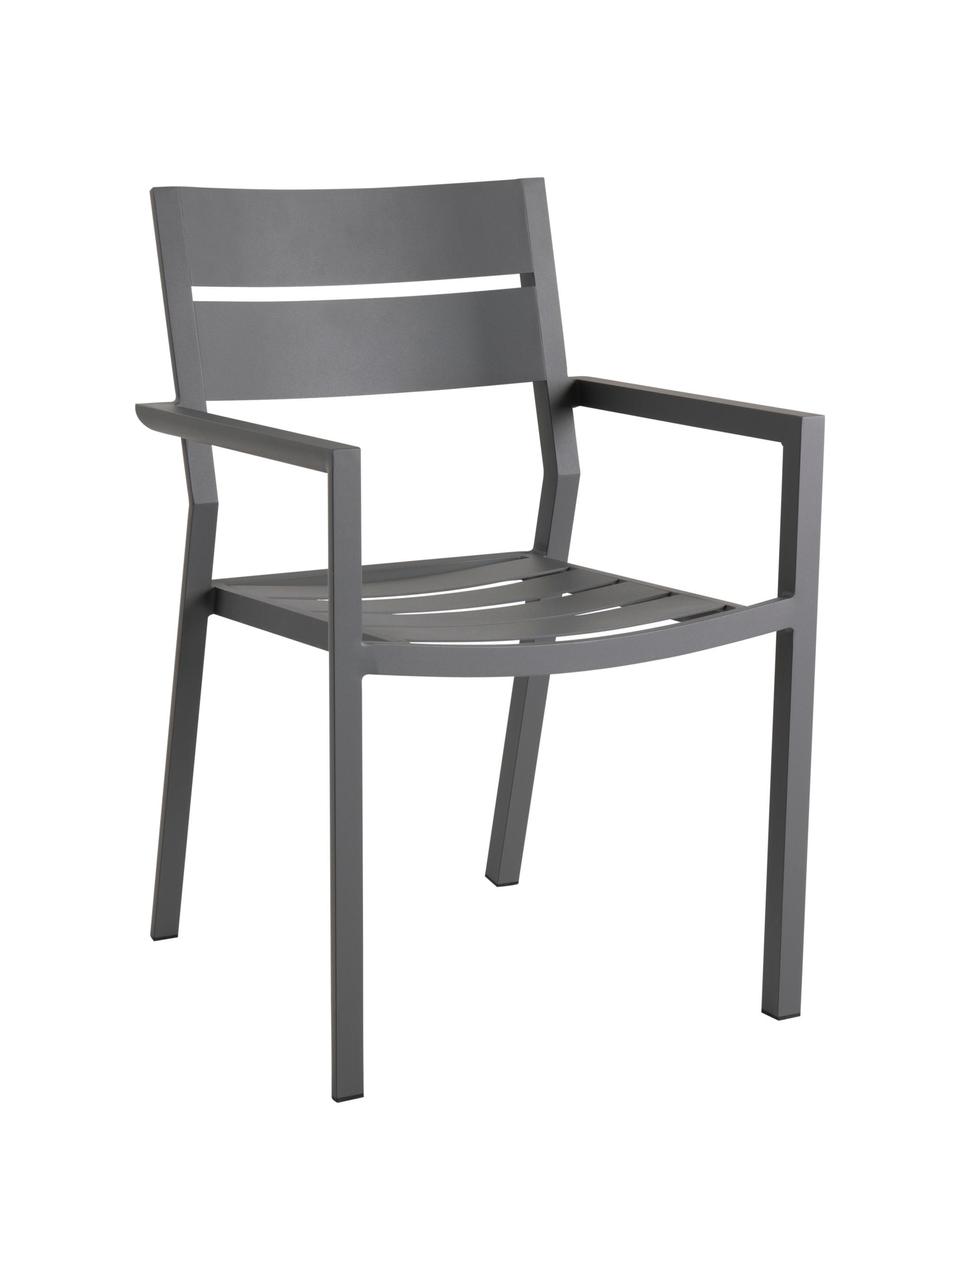 Krzesło ogrodowe Delia, Aluminium malowane proszkowo, Antracytowy, S 55 x G 55 cm